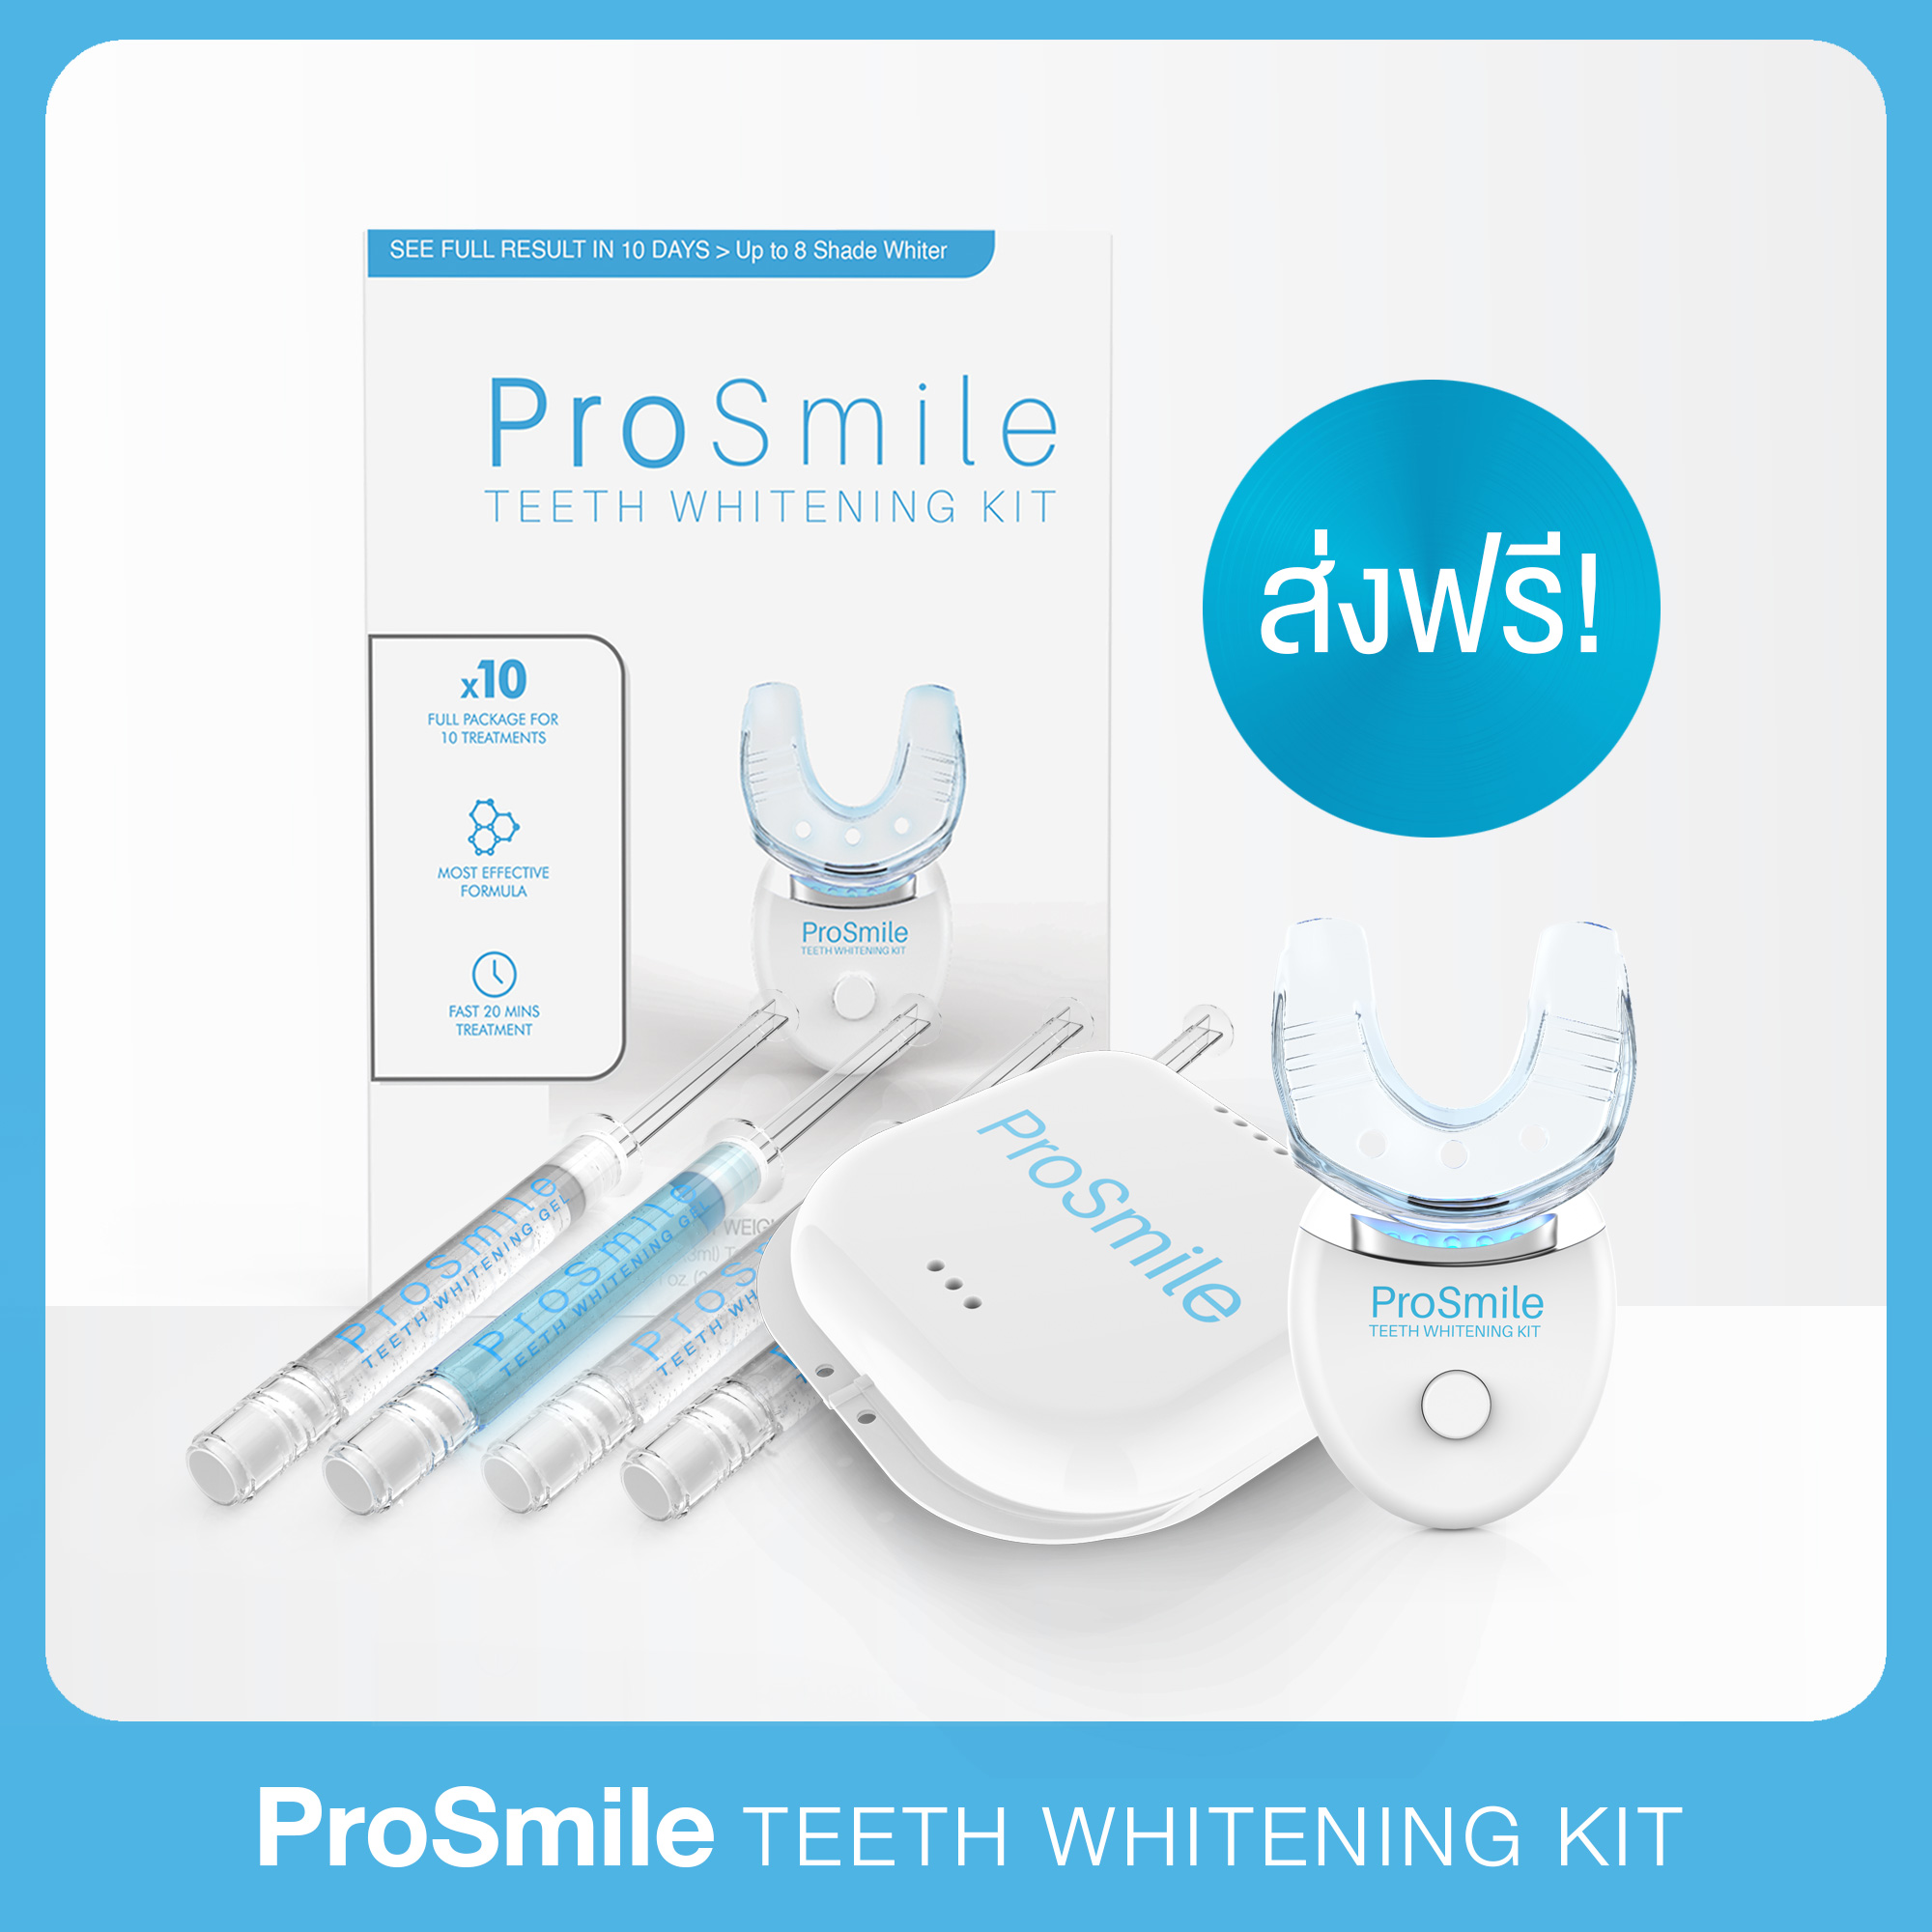 [ส่งฟรี!] ฟอกฟันขาว ชุดใหญ่ จัดเต็ม Prosmile พร้อม เจลฟอกฟันขาว สูตรที่ดีที่สุดถึง 3 หลอด อุปกรณ์ครบชุด. 